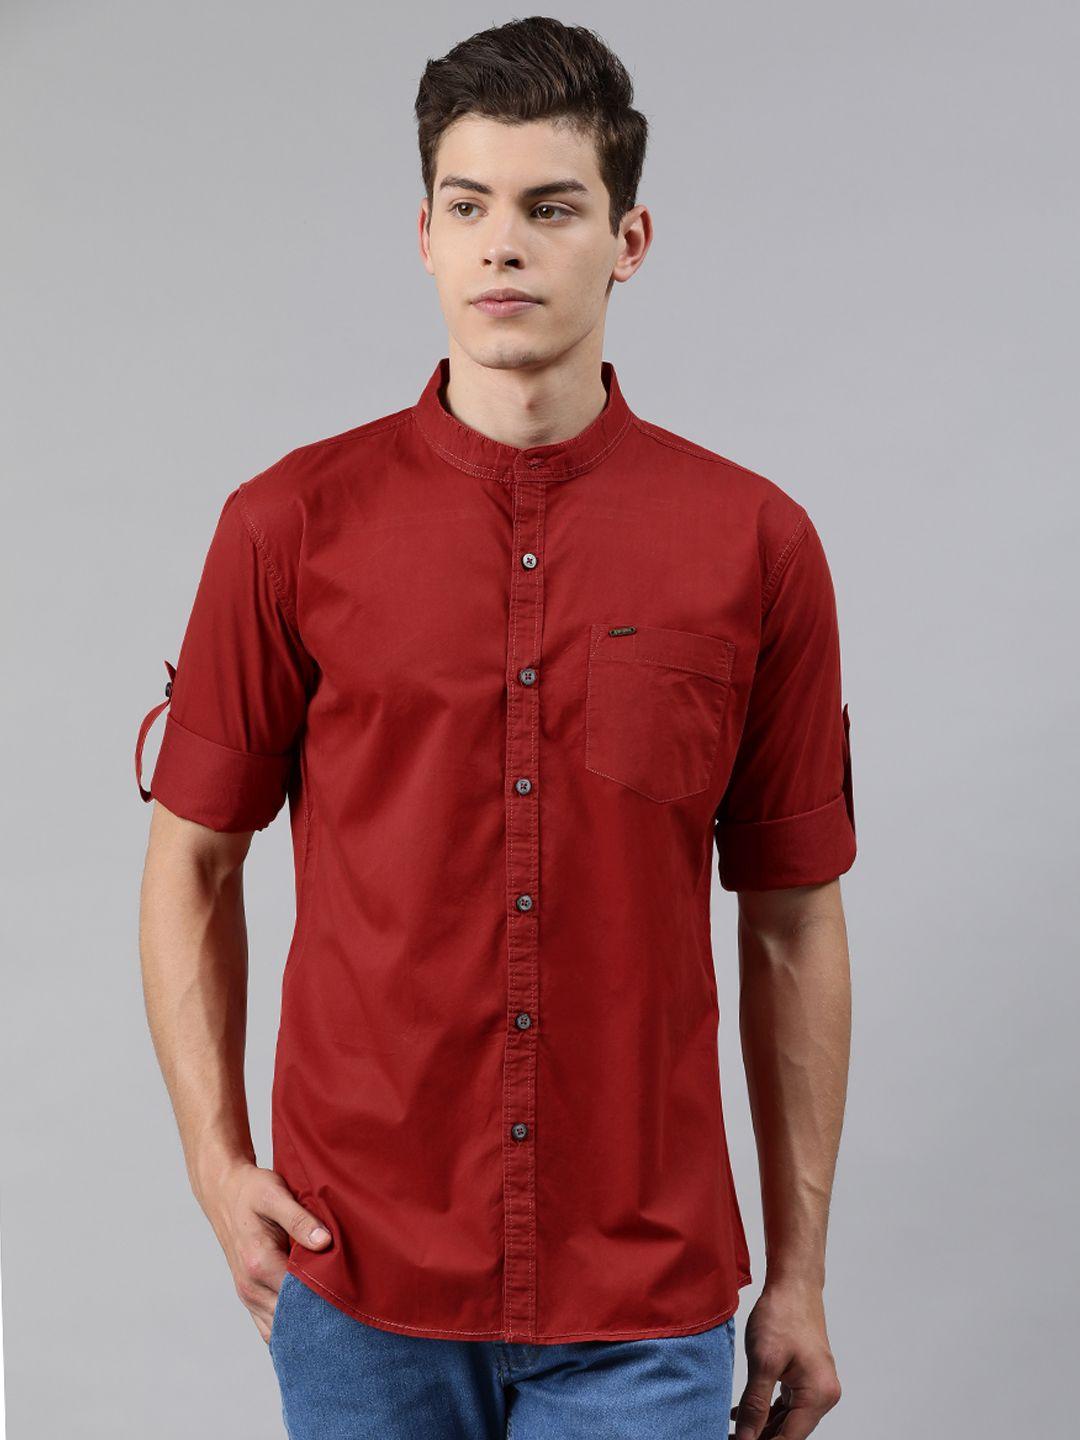 urbano fashion men maroon slim fit solid casual shirt